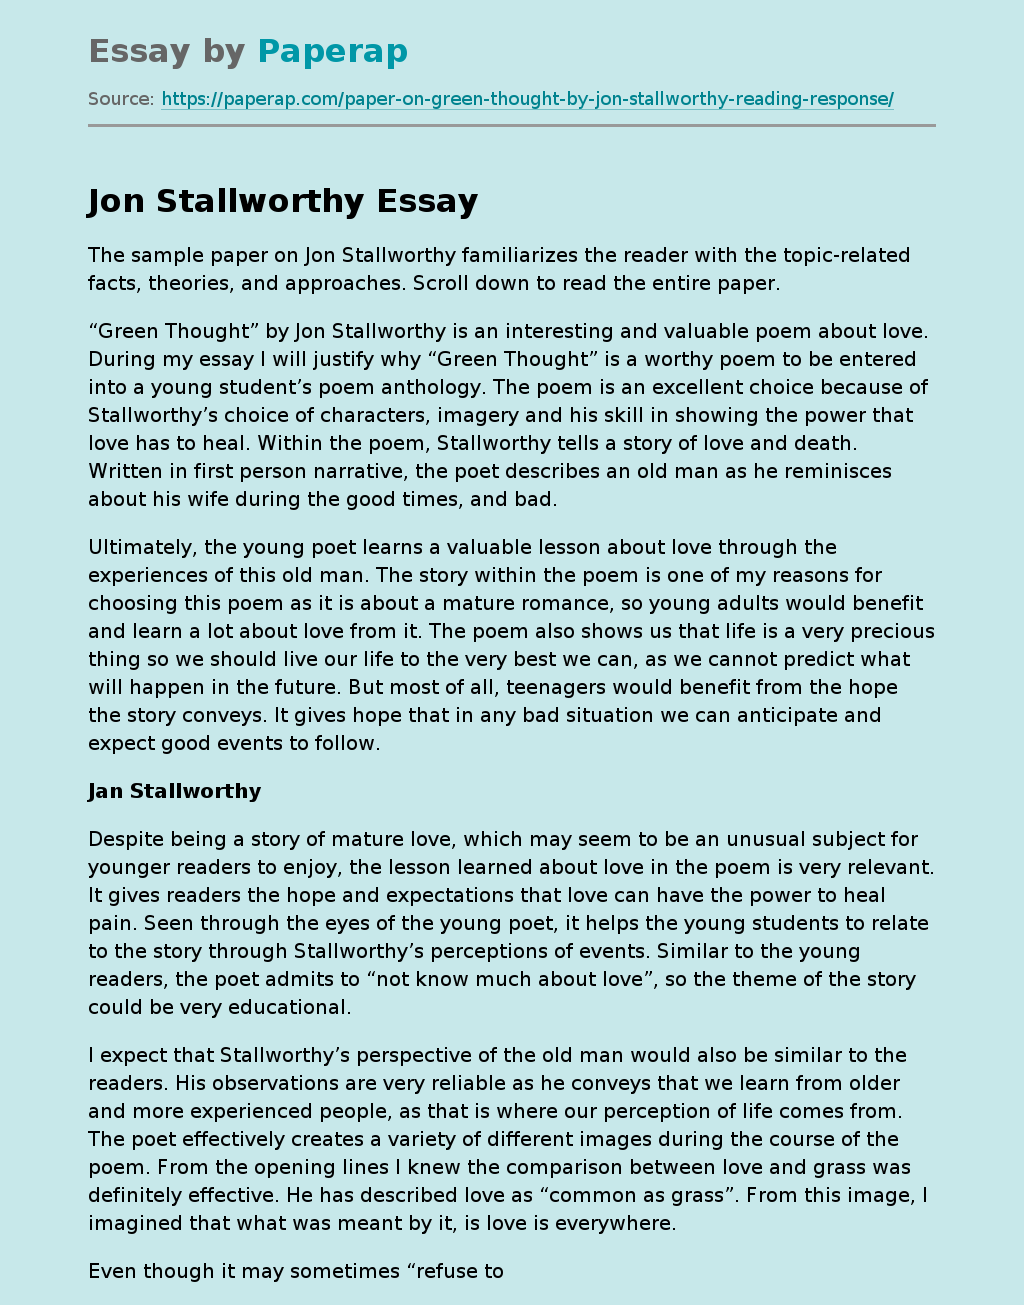 Jon Stallworthy